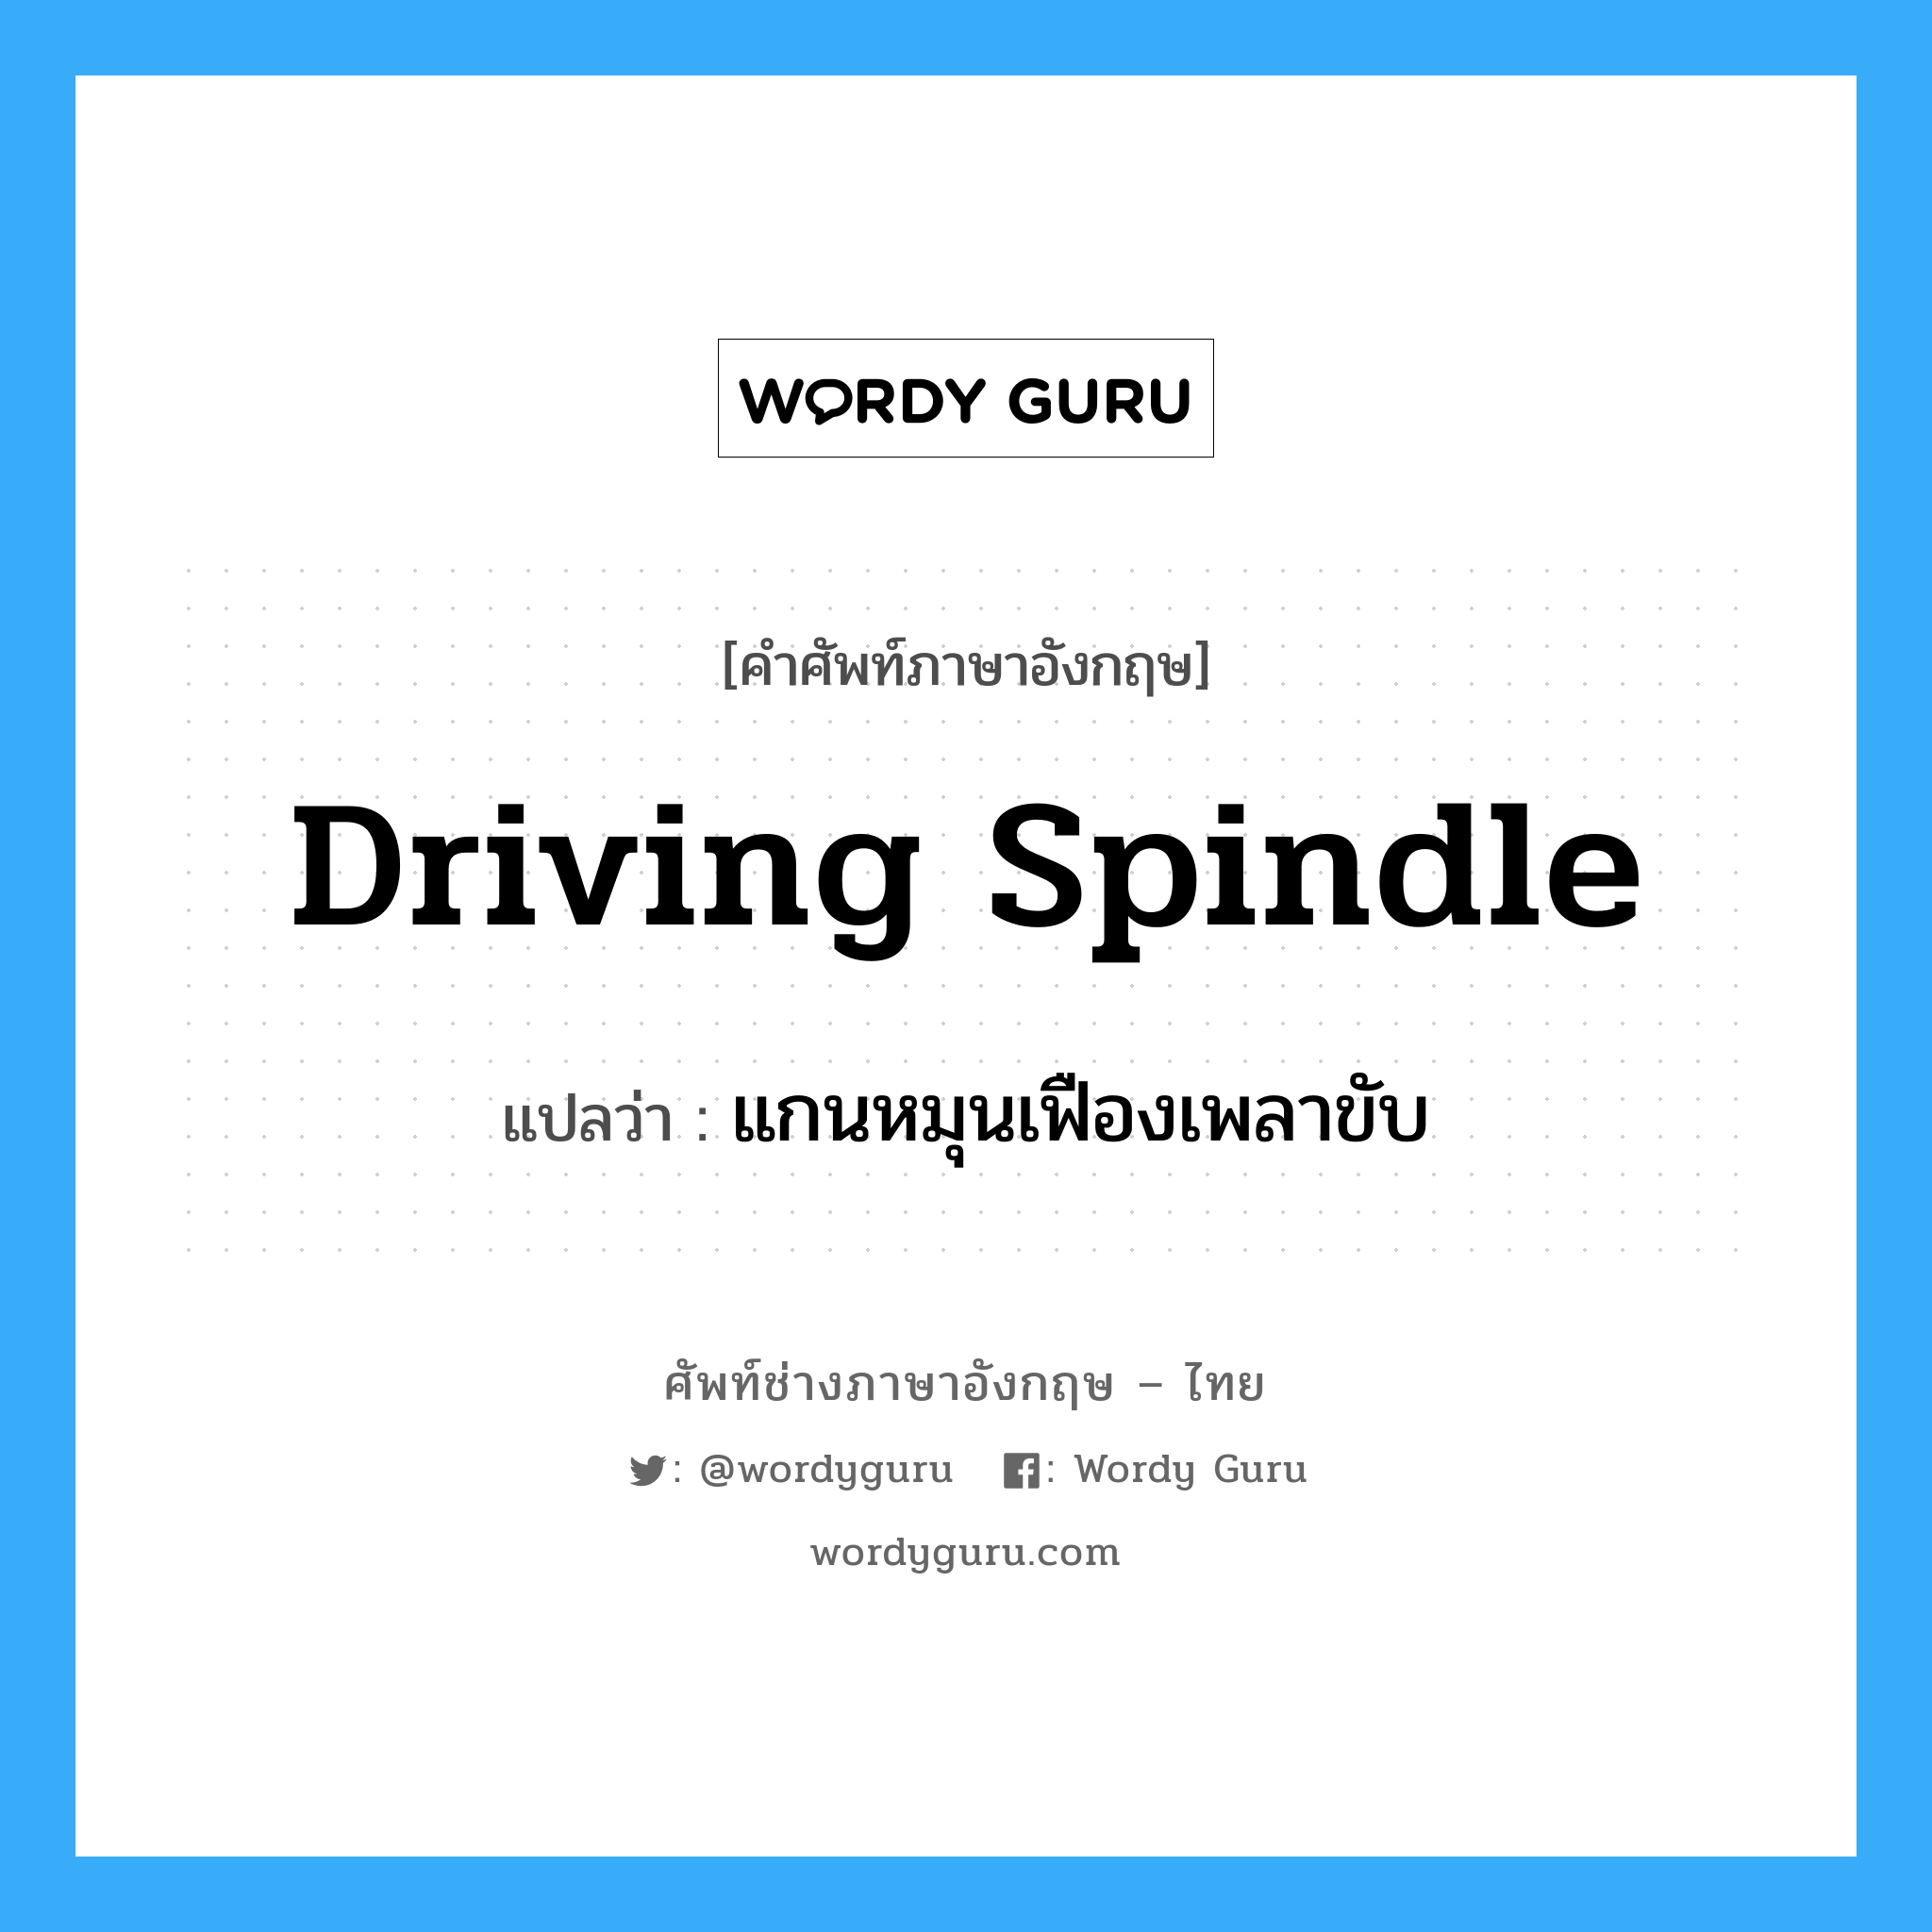 แกนหมุนเฟืองเพลาขับ ภาษาอังกฤษ?, คำศัพท์ช่างภาษาอังกฤษ - ไทย แกนหมุนเฟืองเพลาขับ คำศัพท์ภาษาอังกฤษ แกนหมุนเฟืองเพลาขับ แปลว่า driving spindle